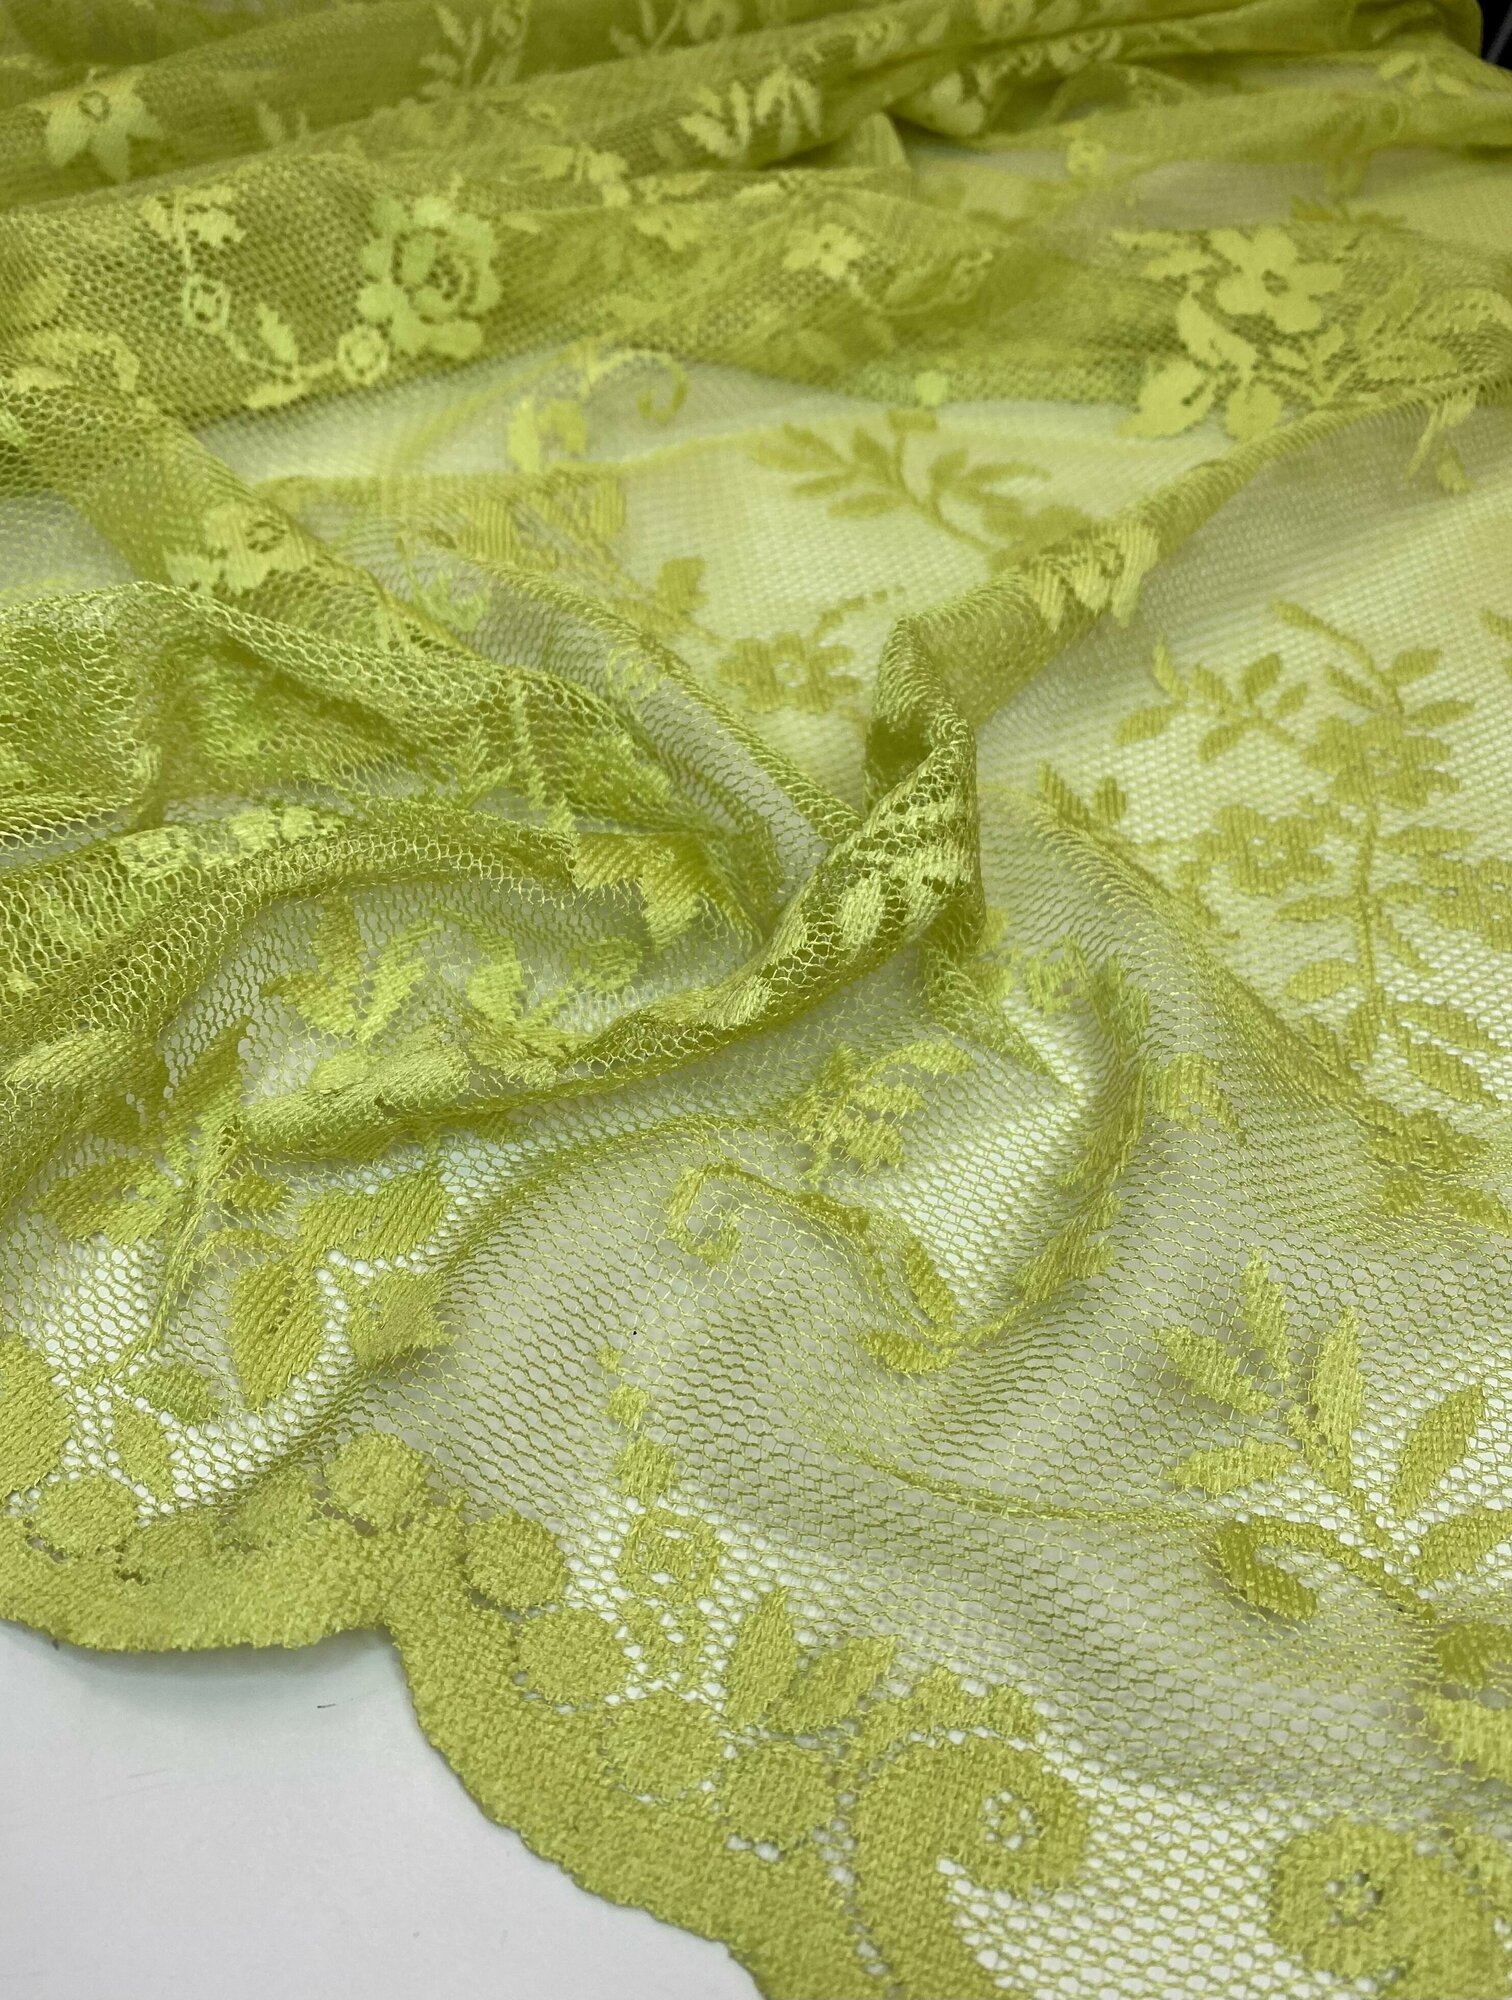 Ткань гипюр-сетка ажурная, коллекция "Fabiana" цвет лимонный, высота 320см